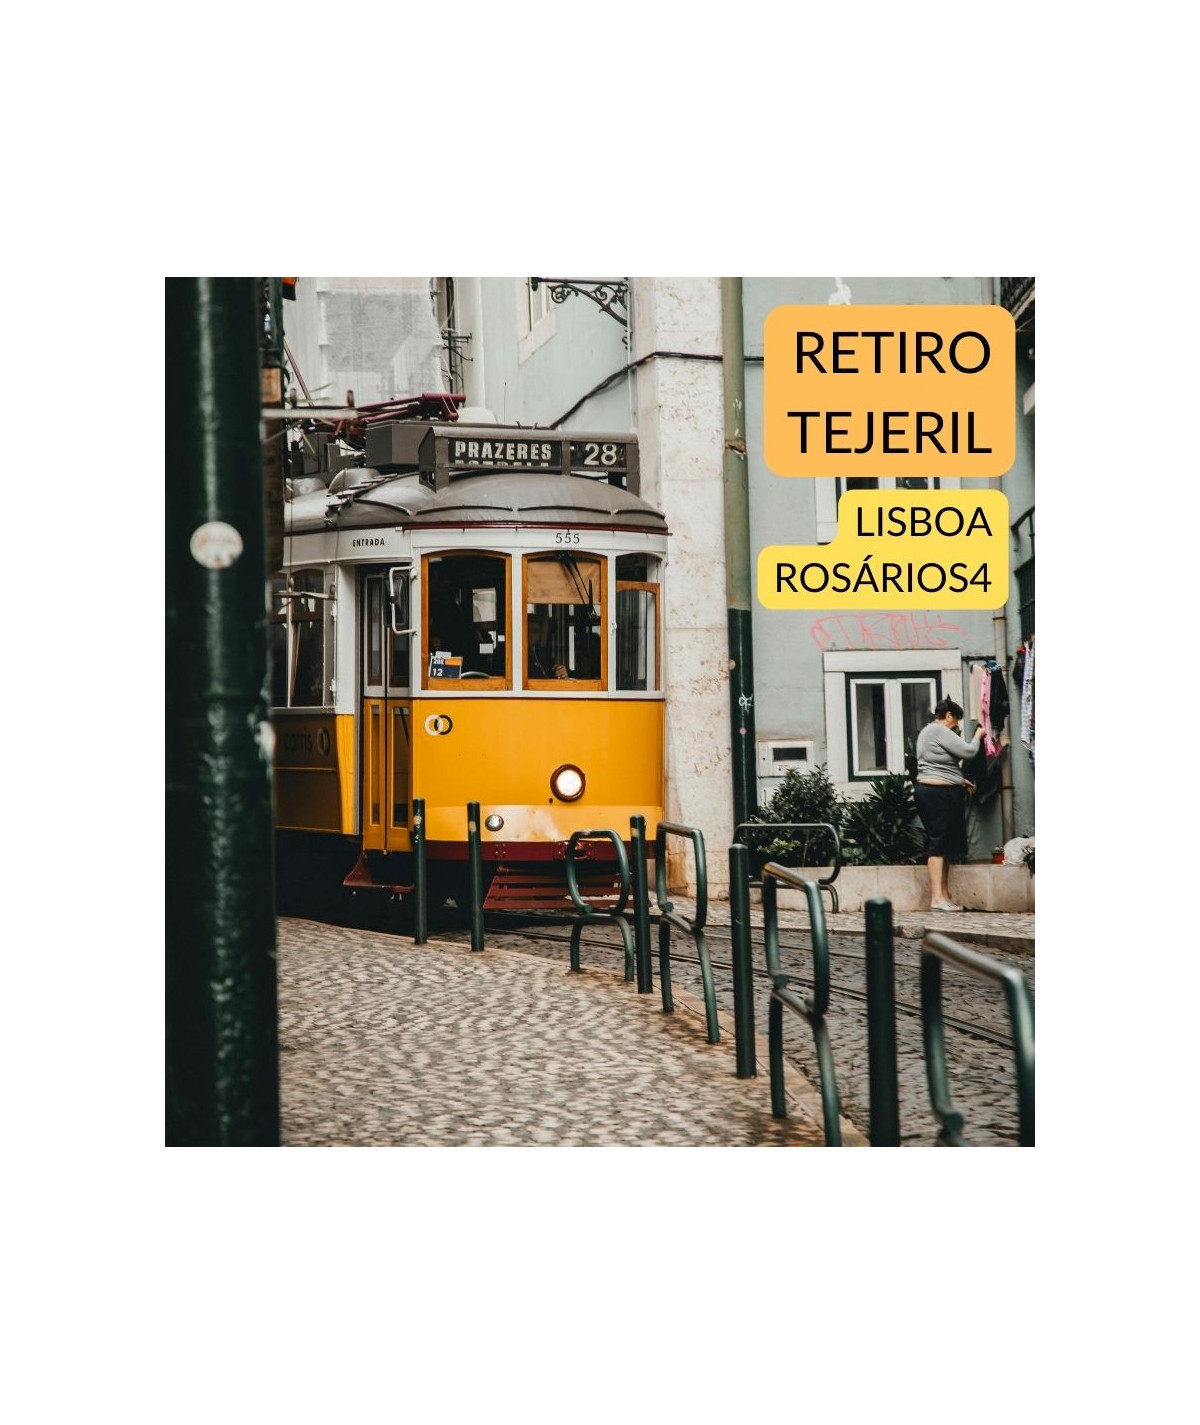 Retiro tejeril en Lisboa